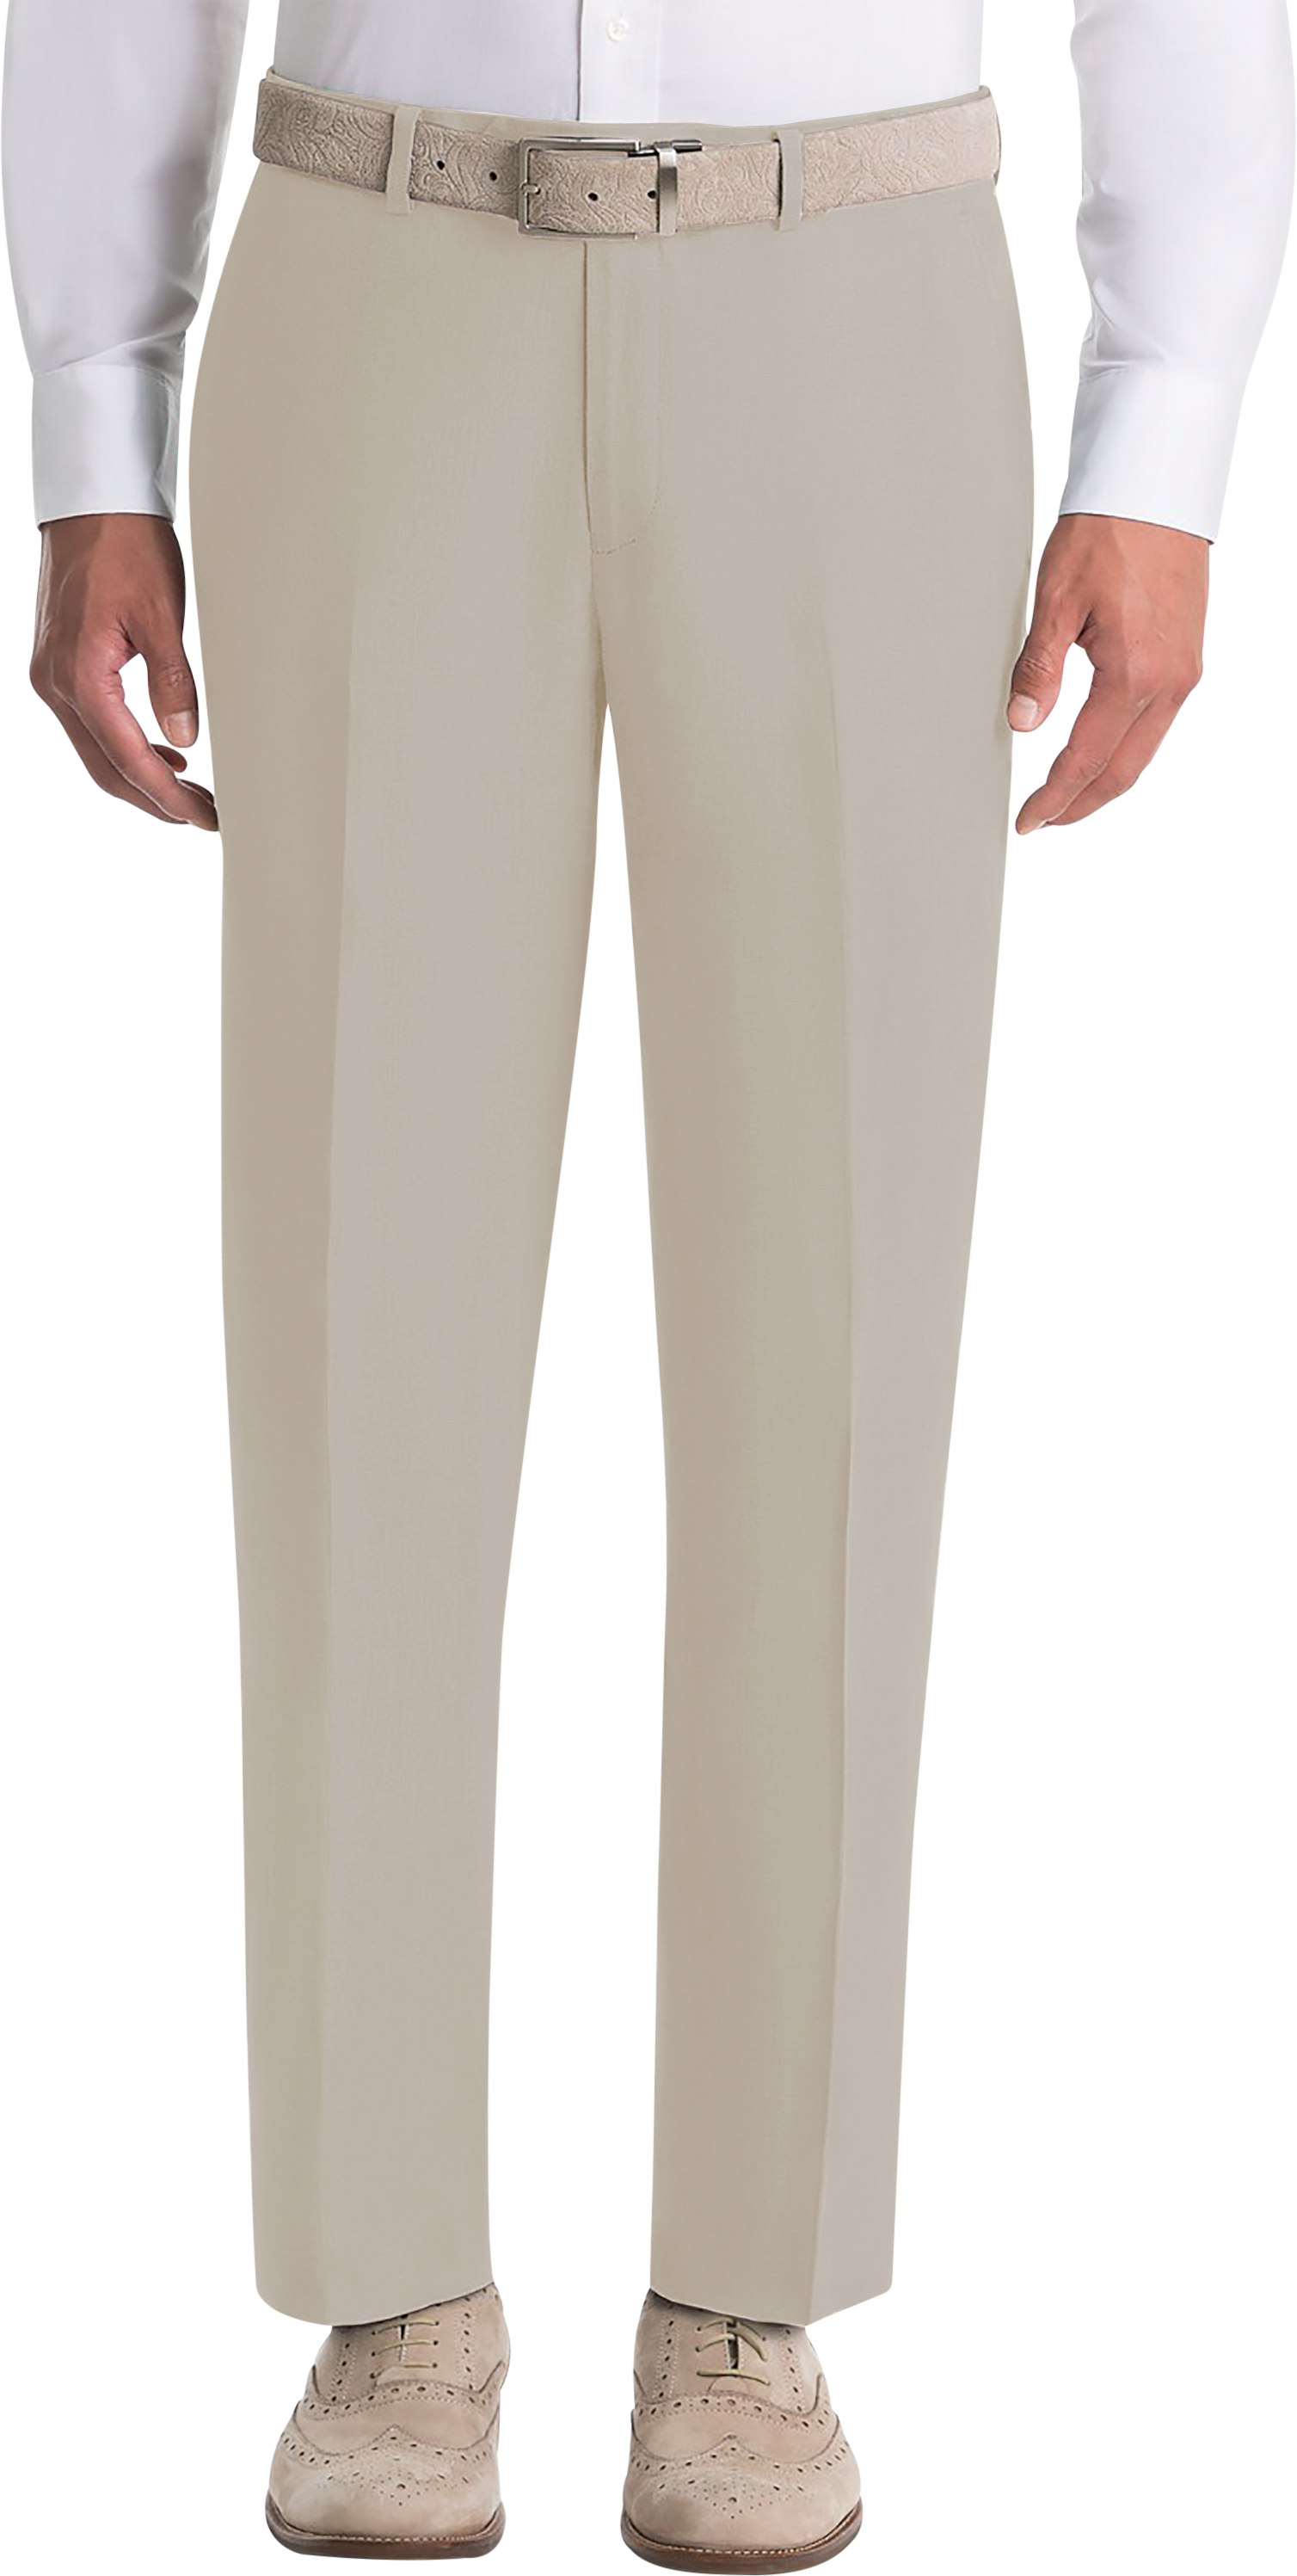 Lauren By Ralph Lauren Classic Fit Linen Suit Separates Pants, Tan